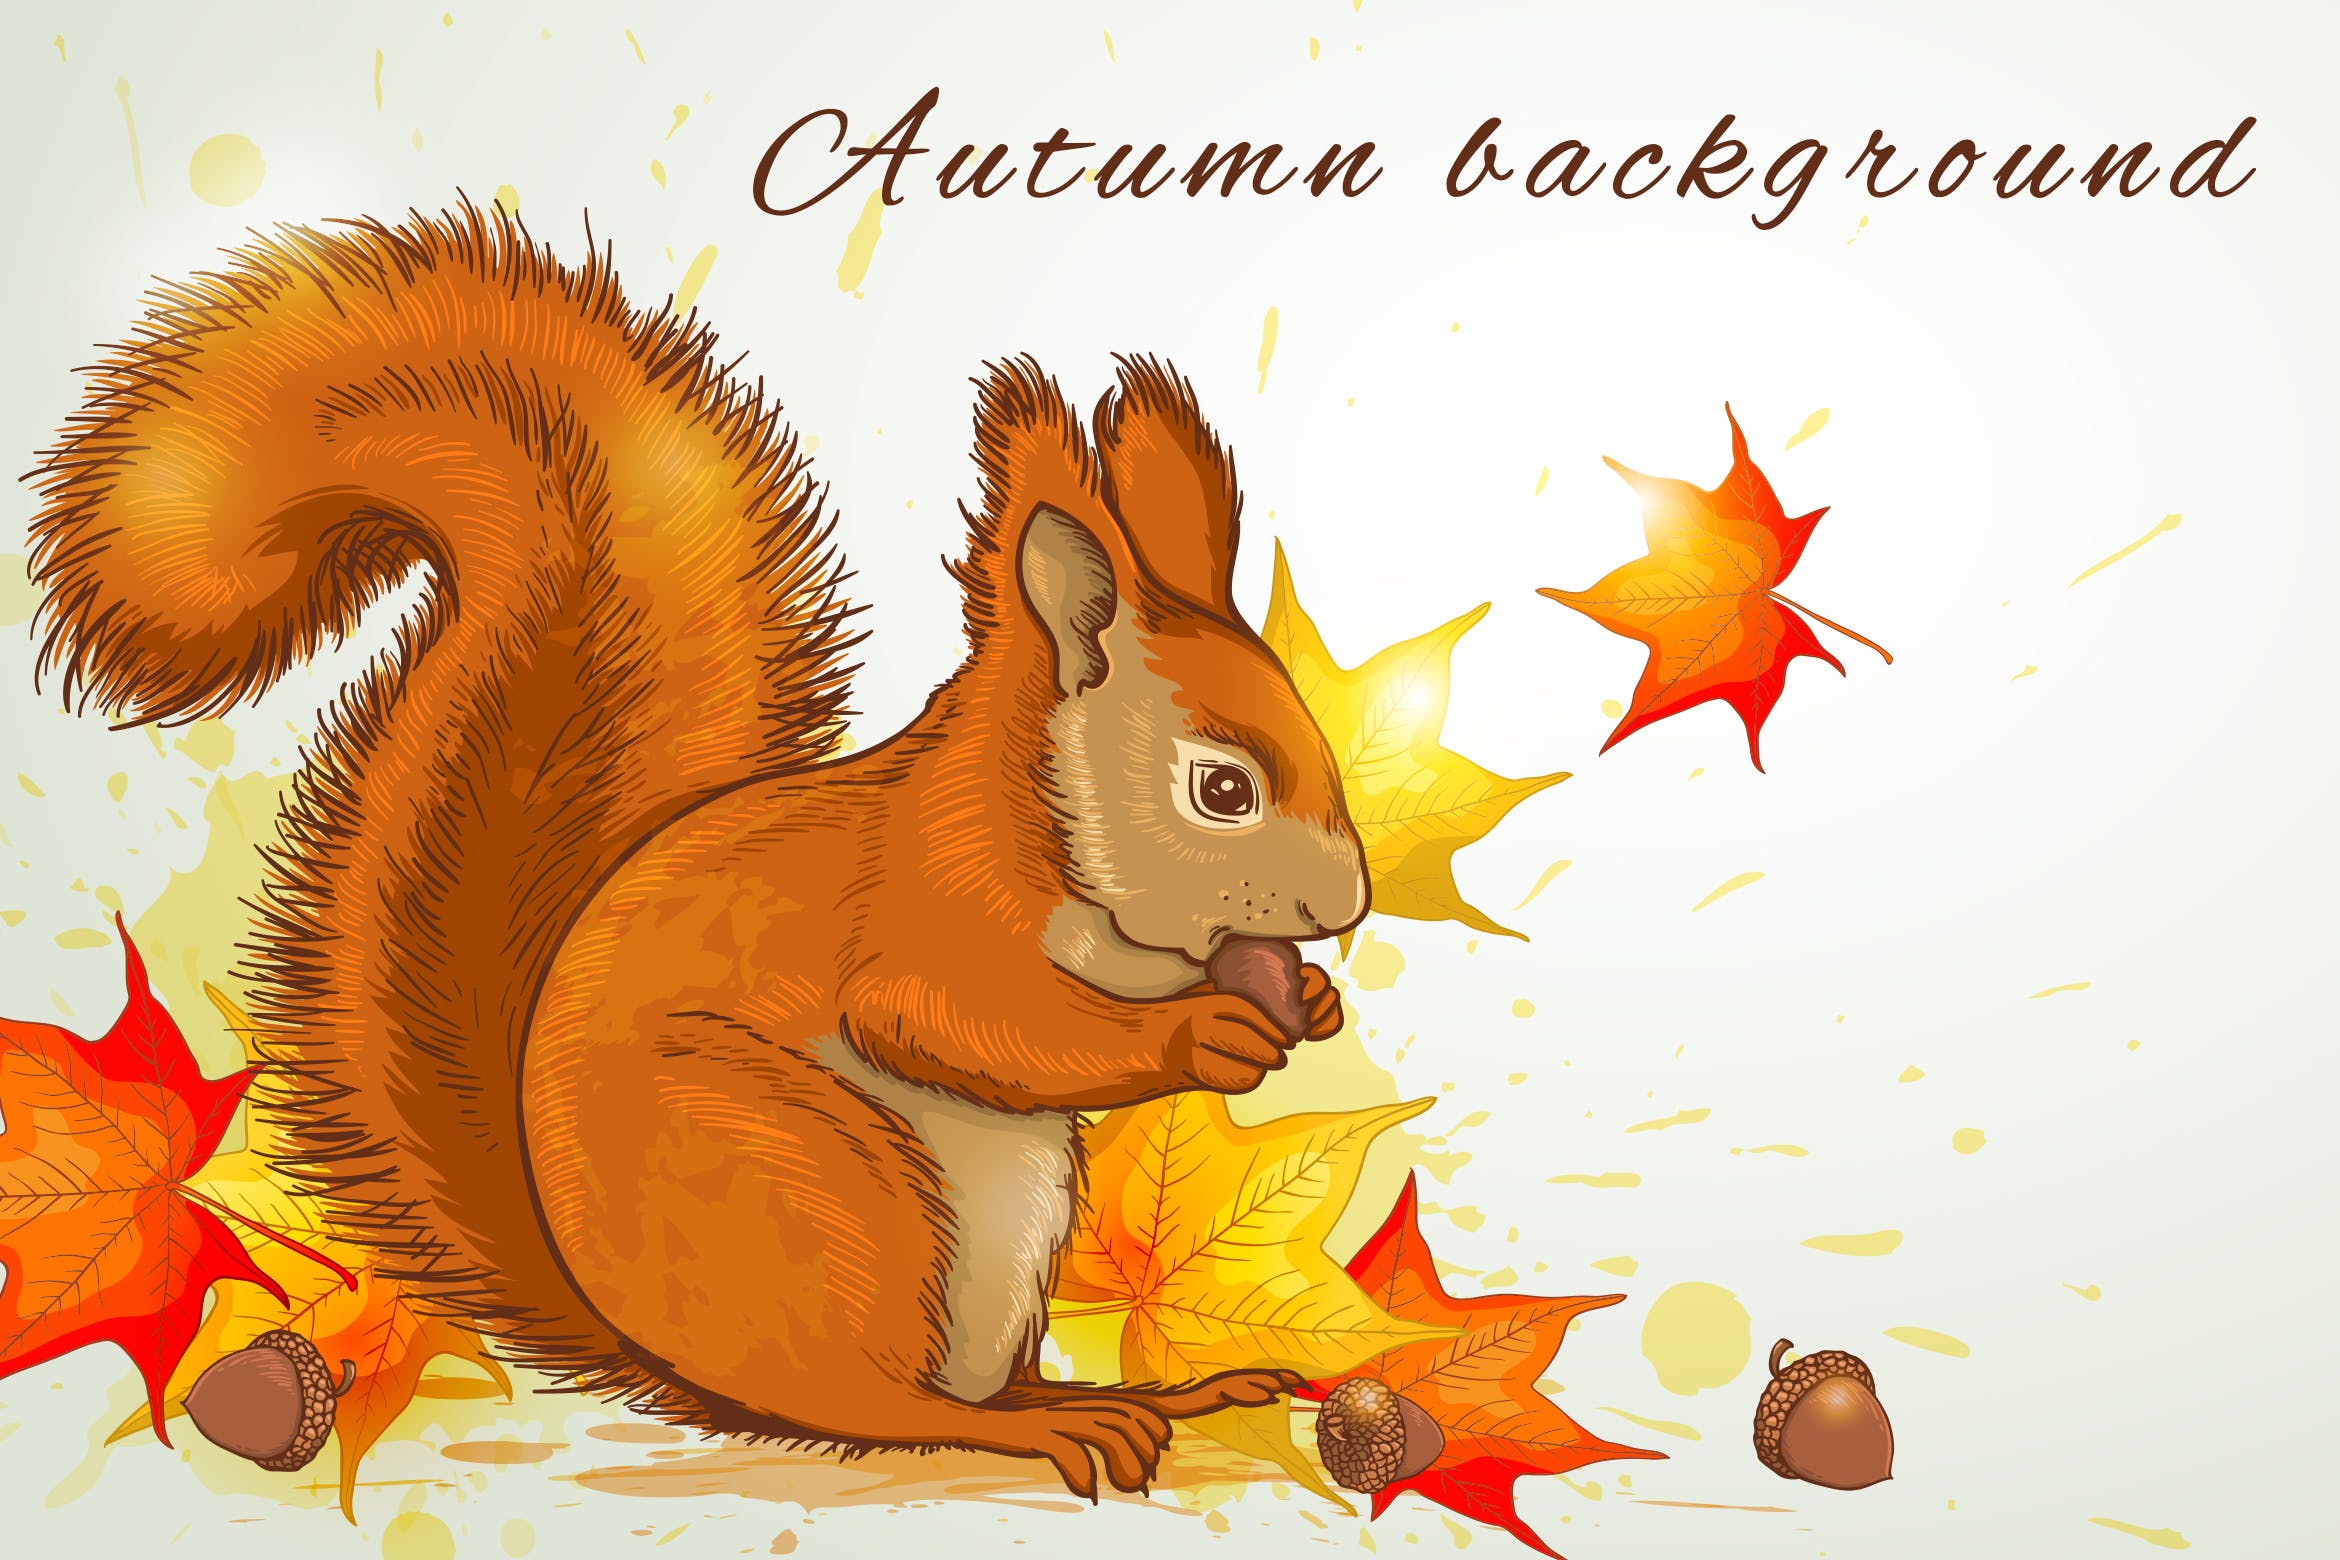 秋天松鼠矢量插画素材 Autumn Background with Squirrel插图